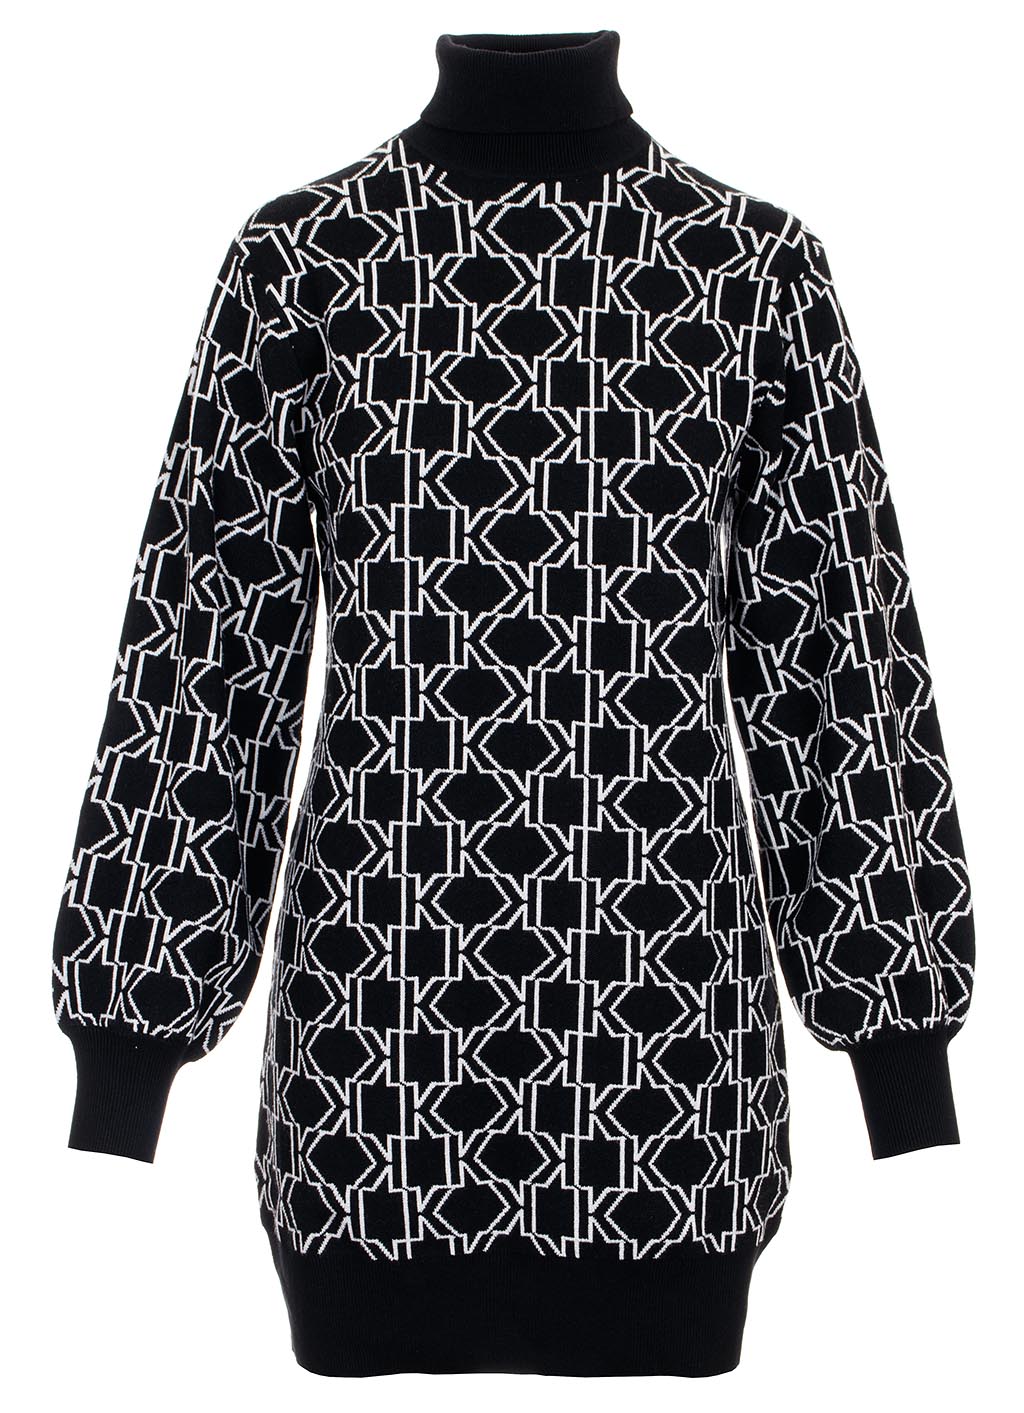 Karl Lagerfeld dámské úpletové šaty Monogram Knit černé s bílou Velikost: S